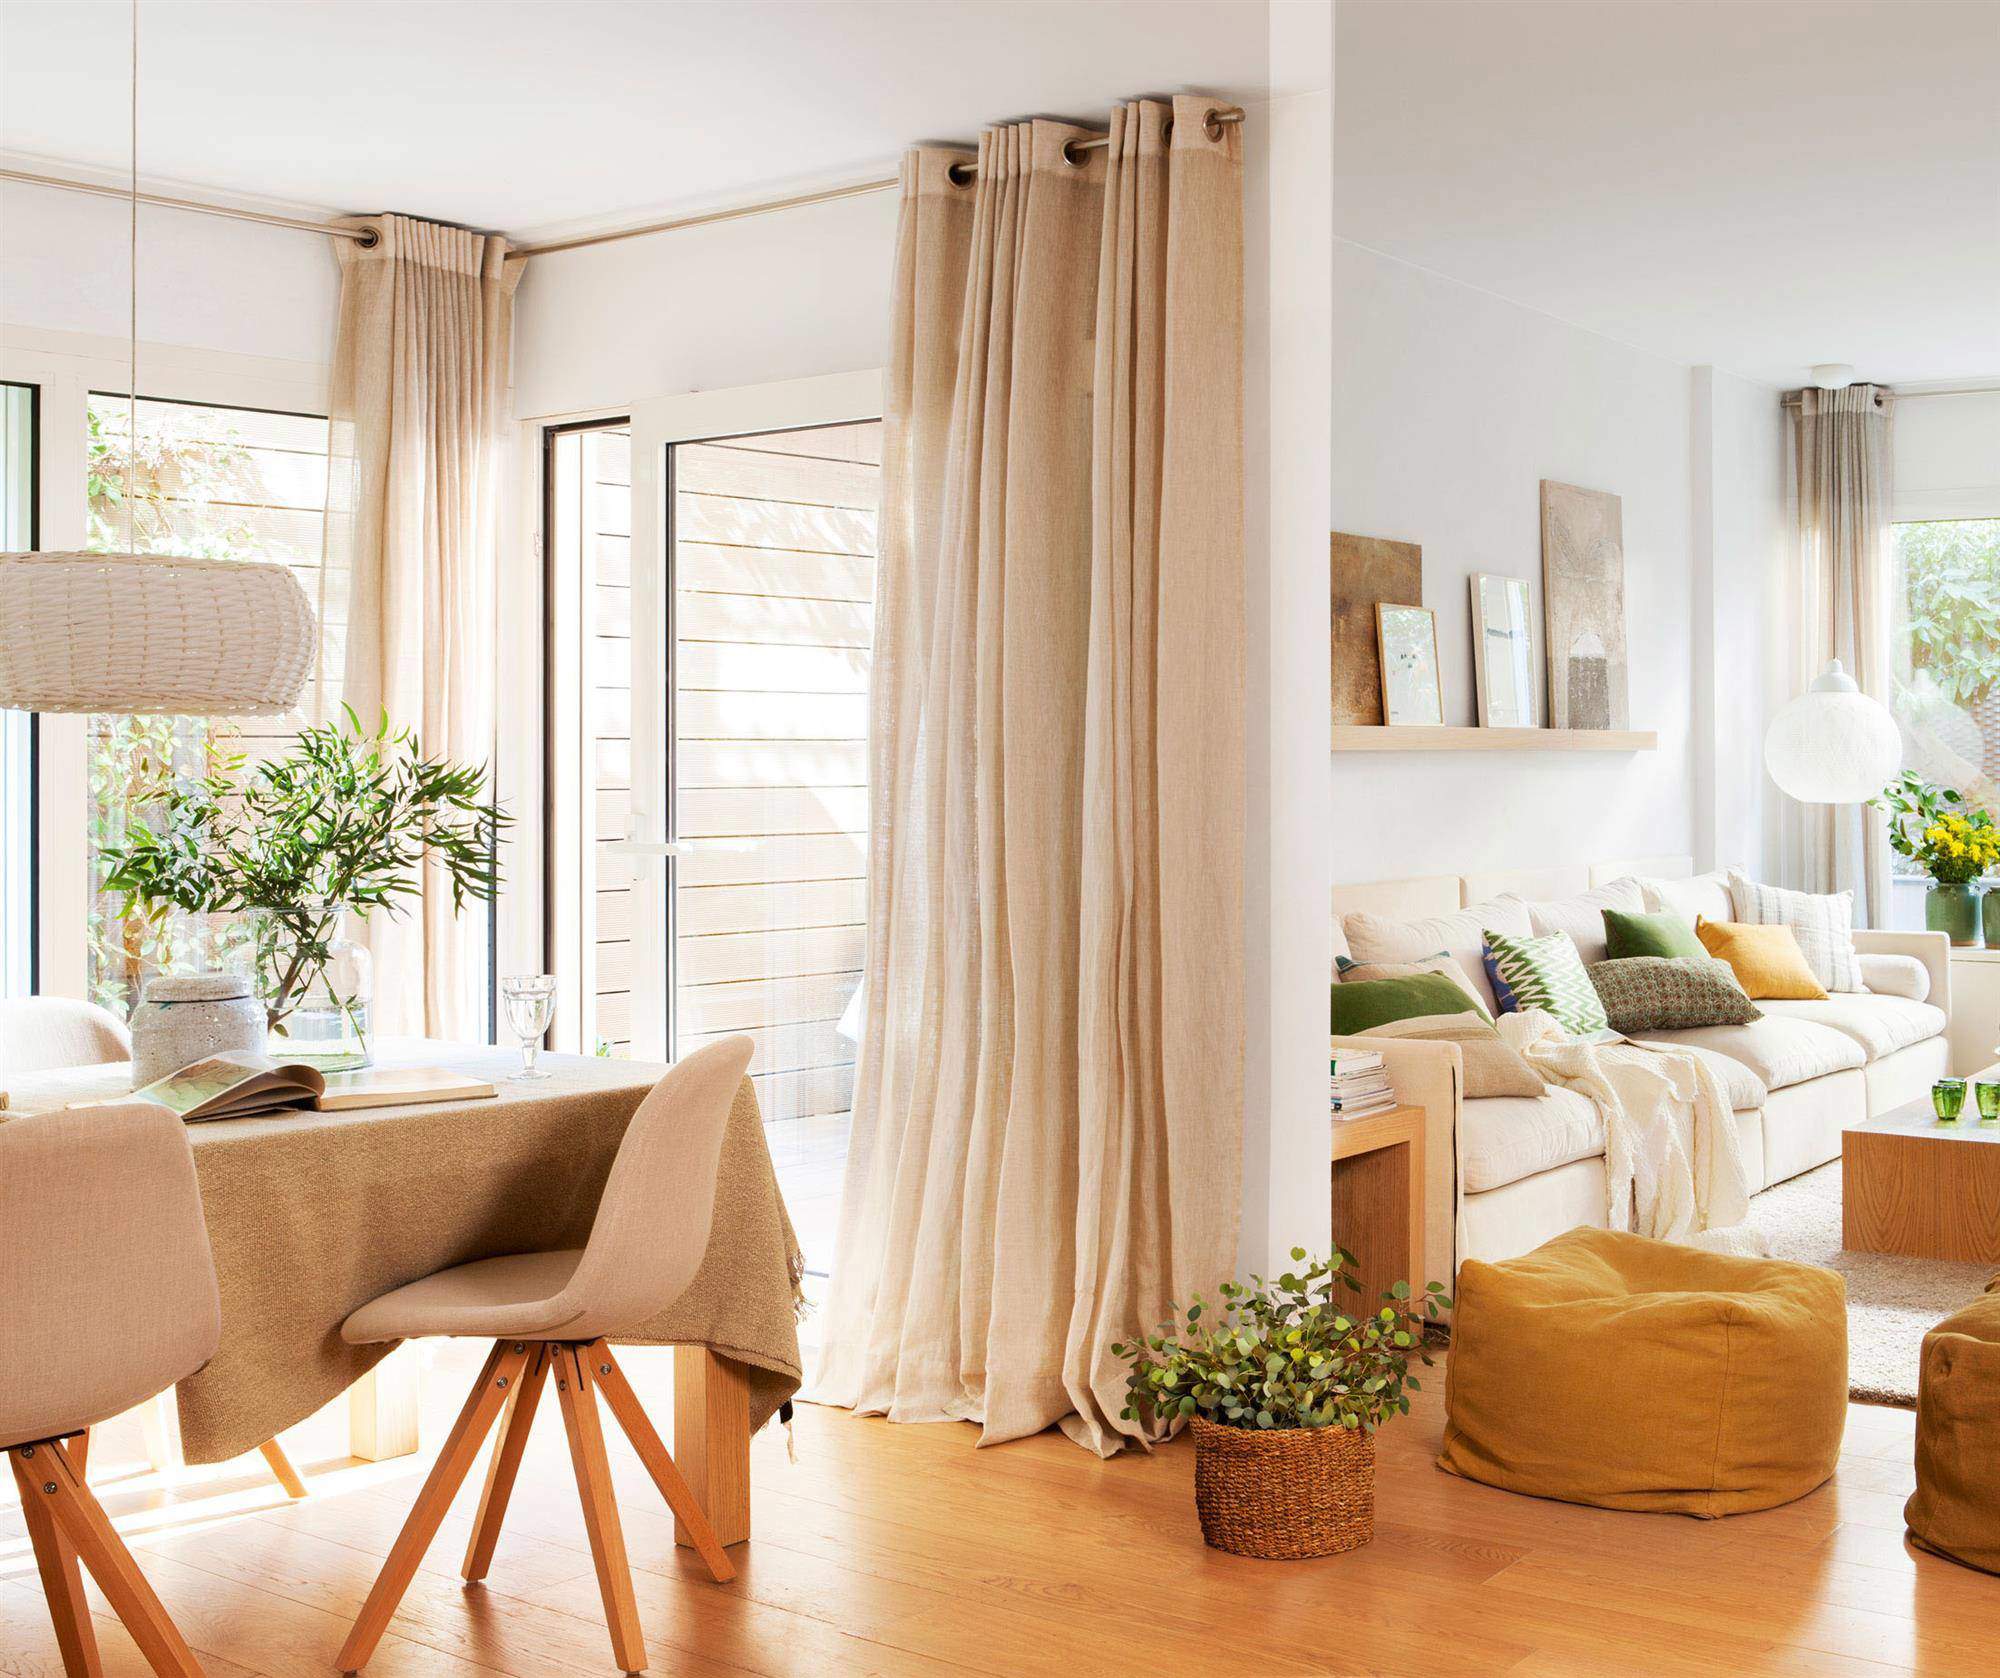 Salón-comedor con cortinas de lino beige hasta el suelo